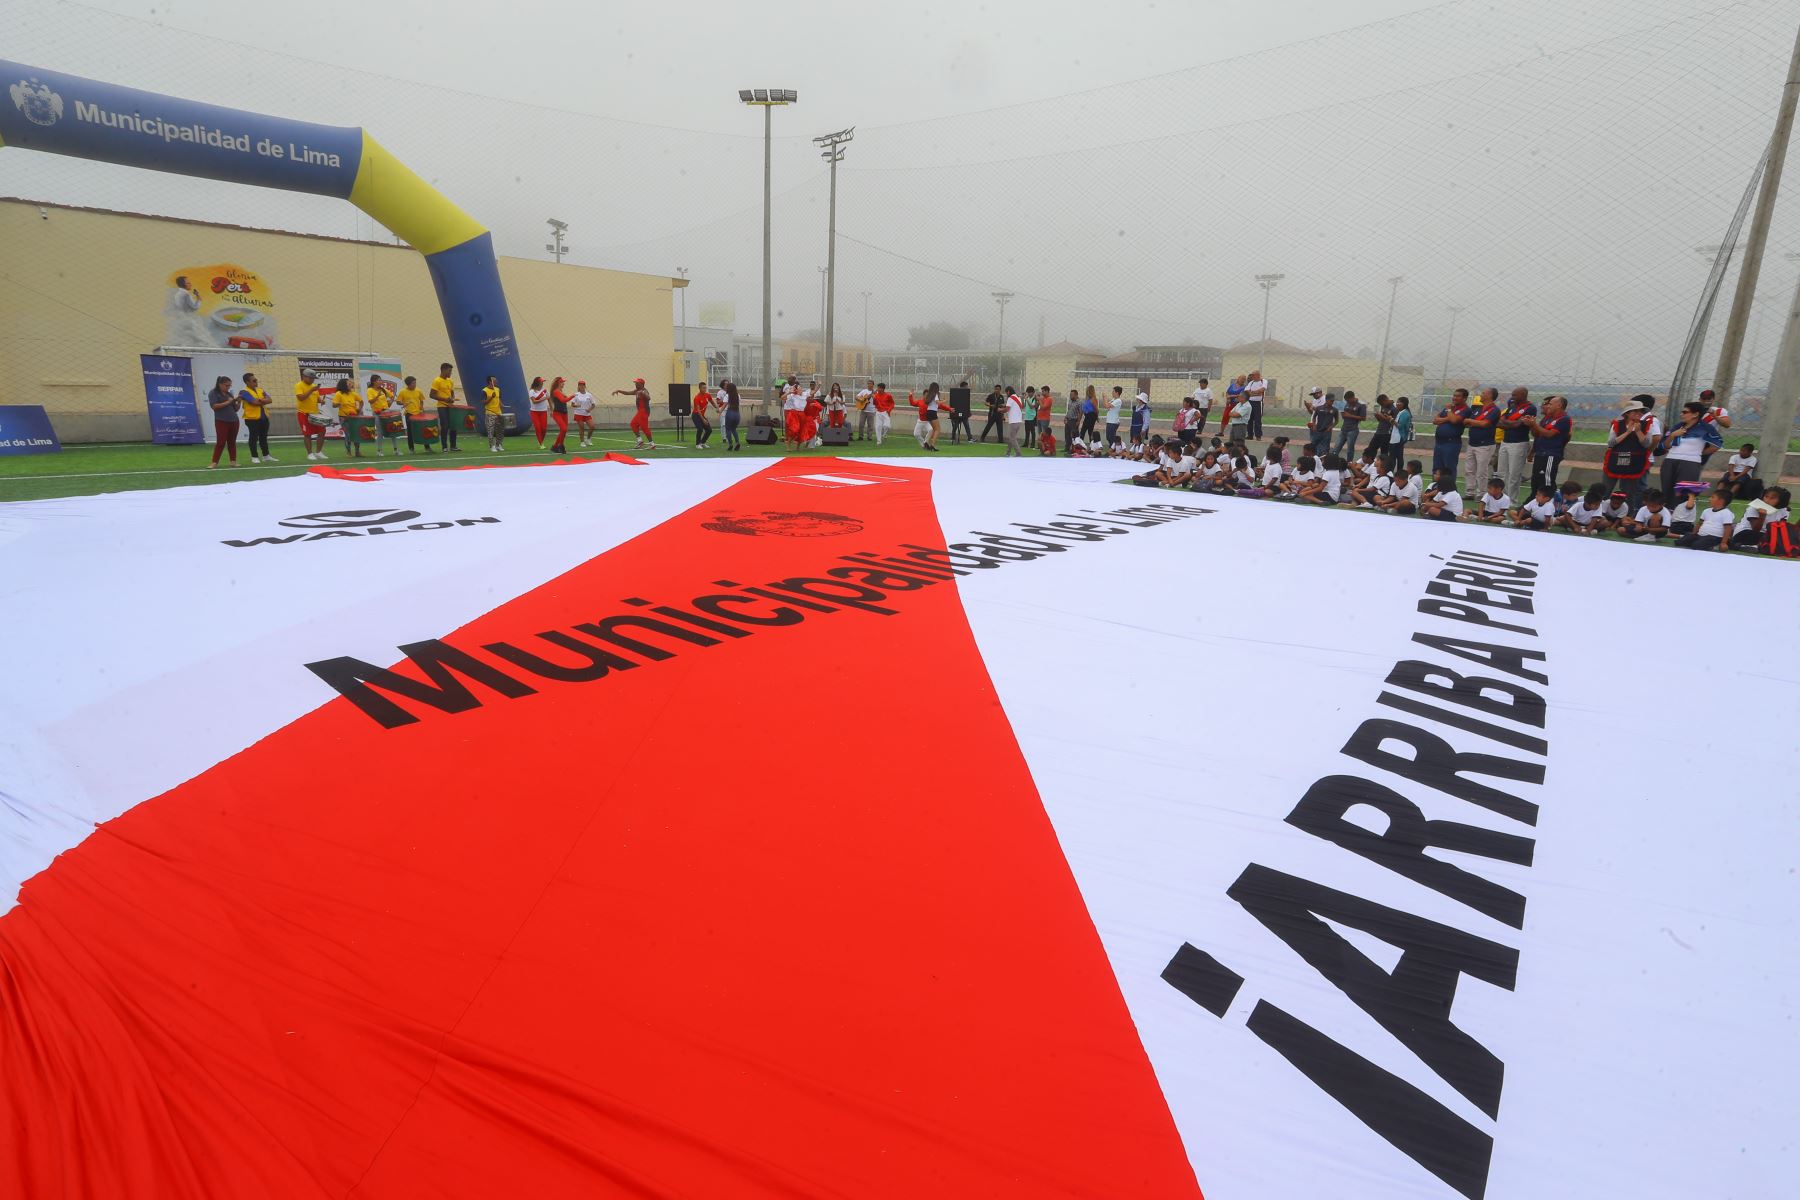 14/03/2018   Municipalidad de Lima presenta "la camiseta de todos" previo al mundial Rusia 2018. Foto.Andina Andrés Valle